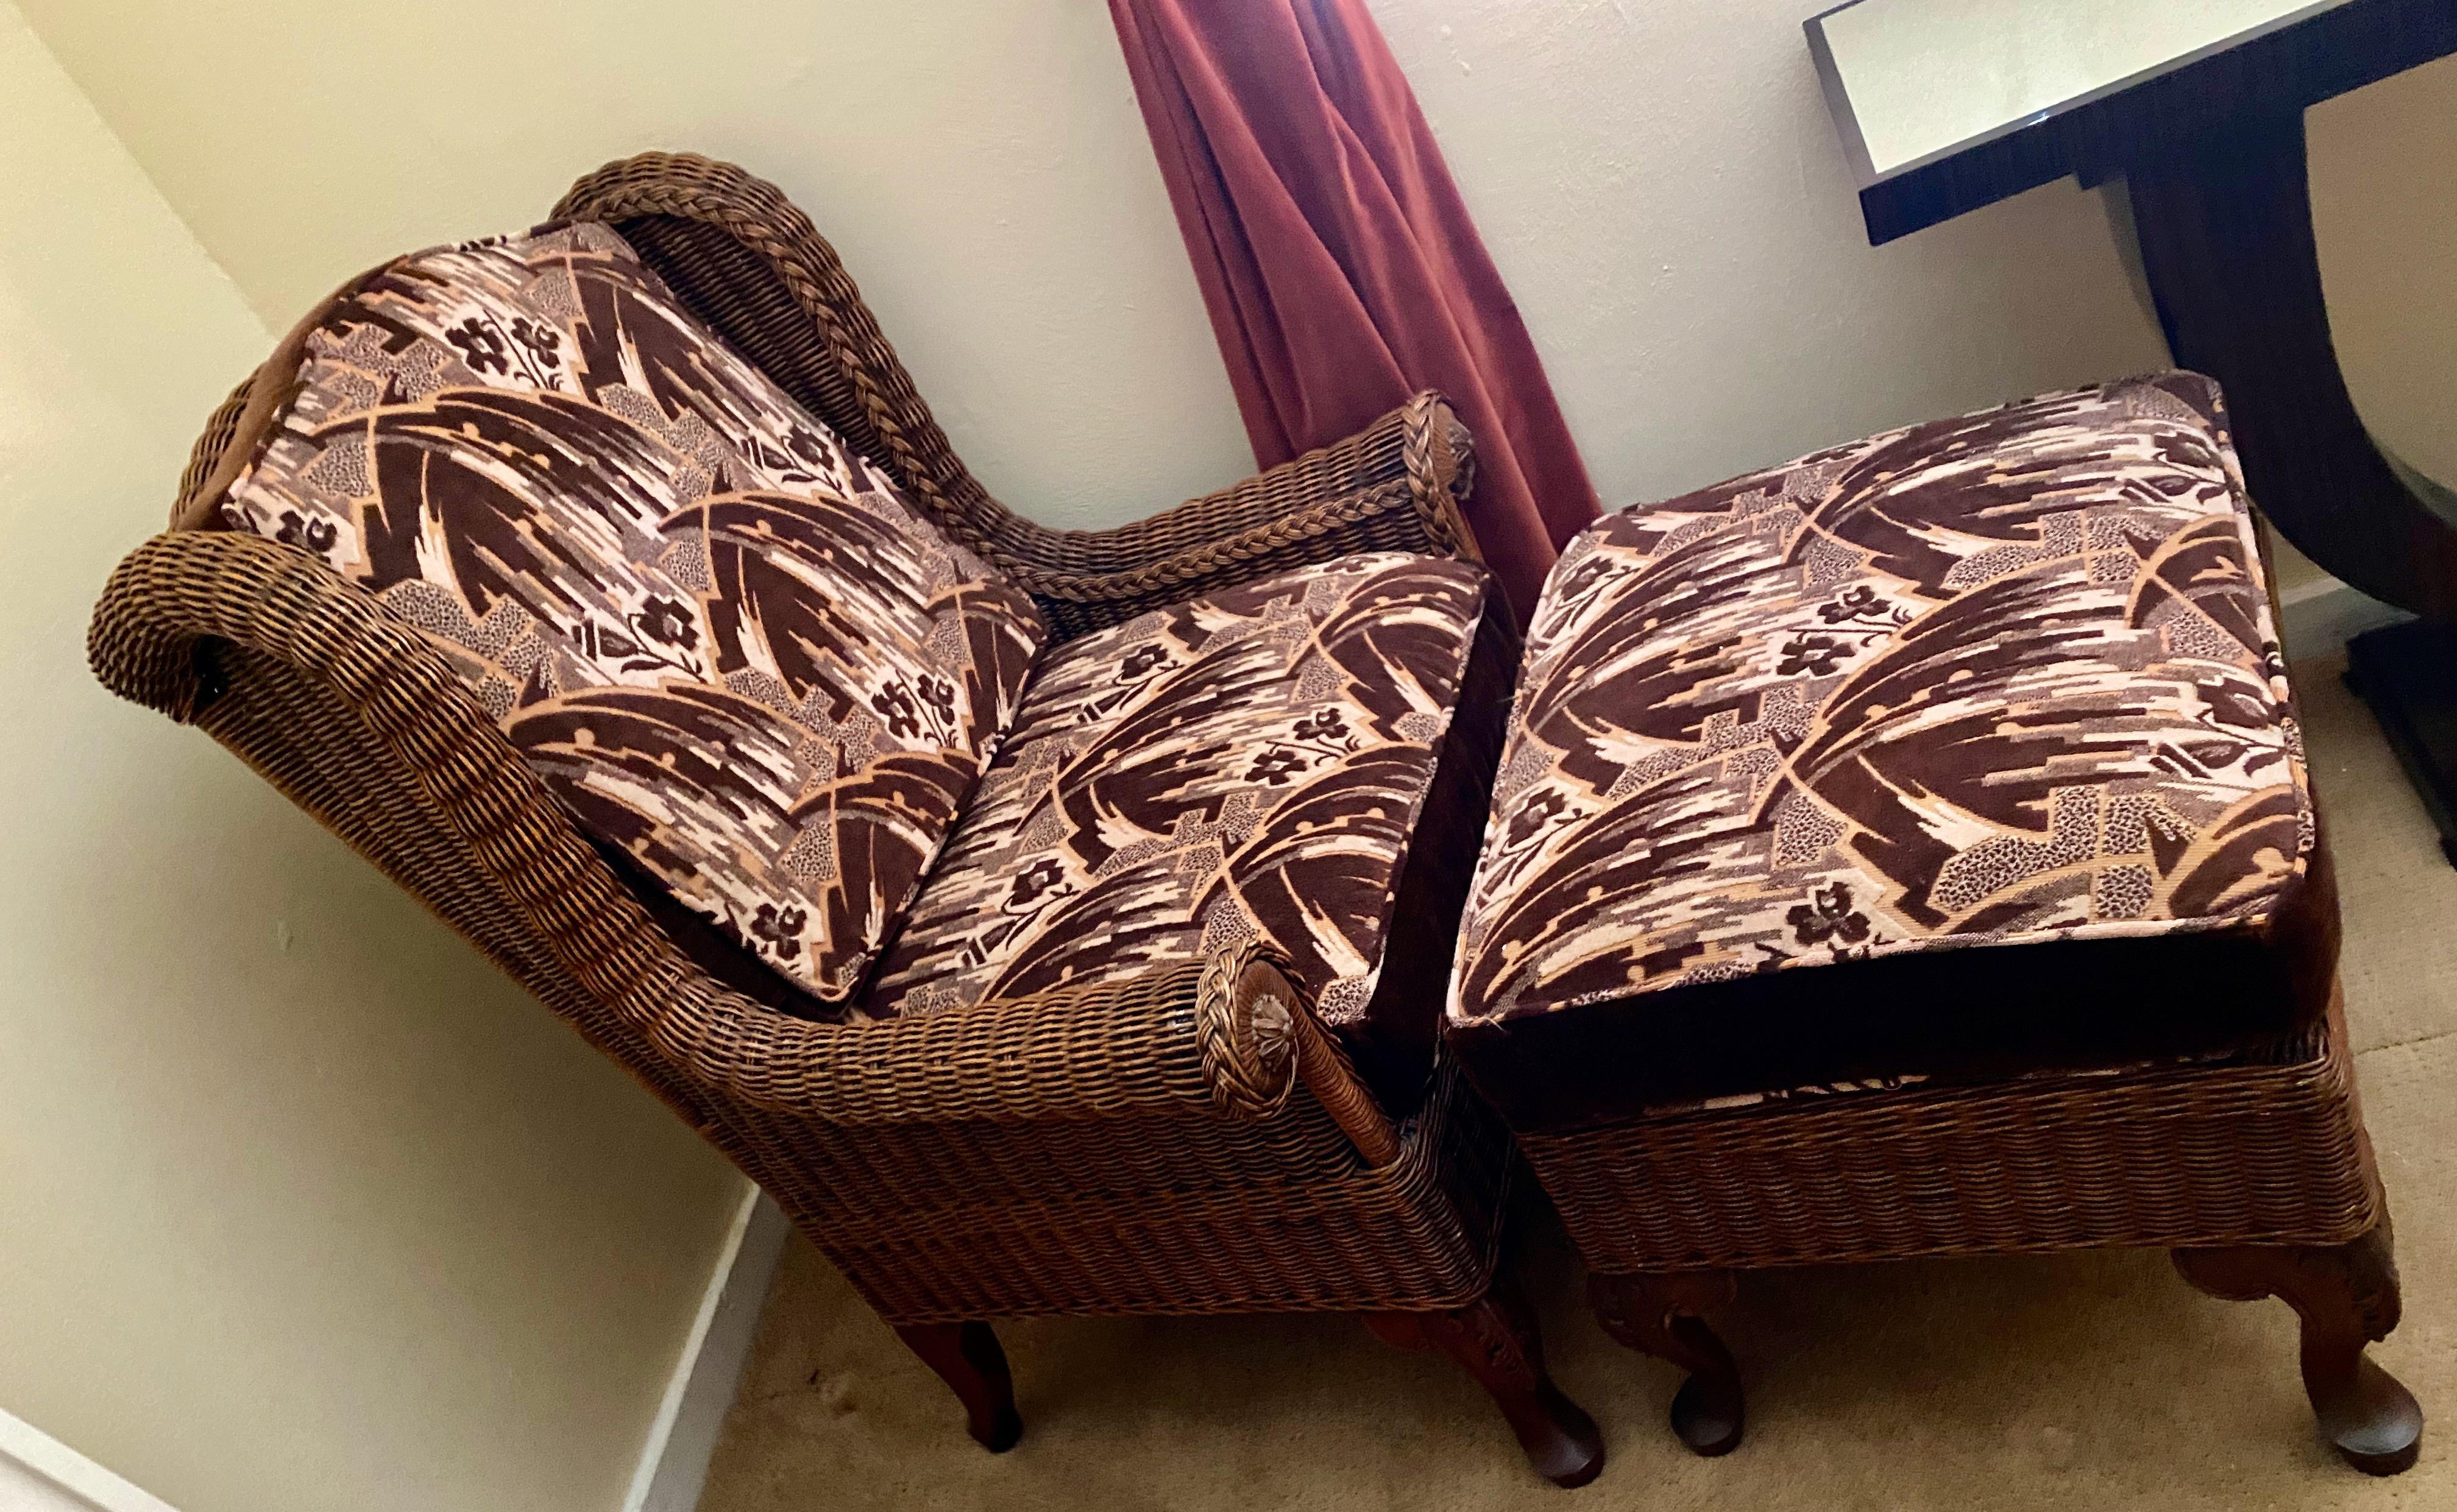 Art Deco Sessel und Hocker aus Korbgeflecht mit hoher Rückenlehne und original Art Deco Stoff. Qualitätsgeflecht im Vintage-Stil, möglicherweise von McGuire hergestellt, mit hochgezogener Rückenlehne, interessanten abgerundeten Armen und hoher